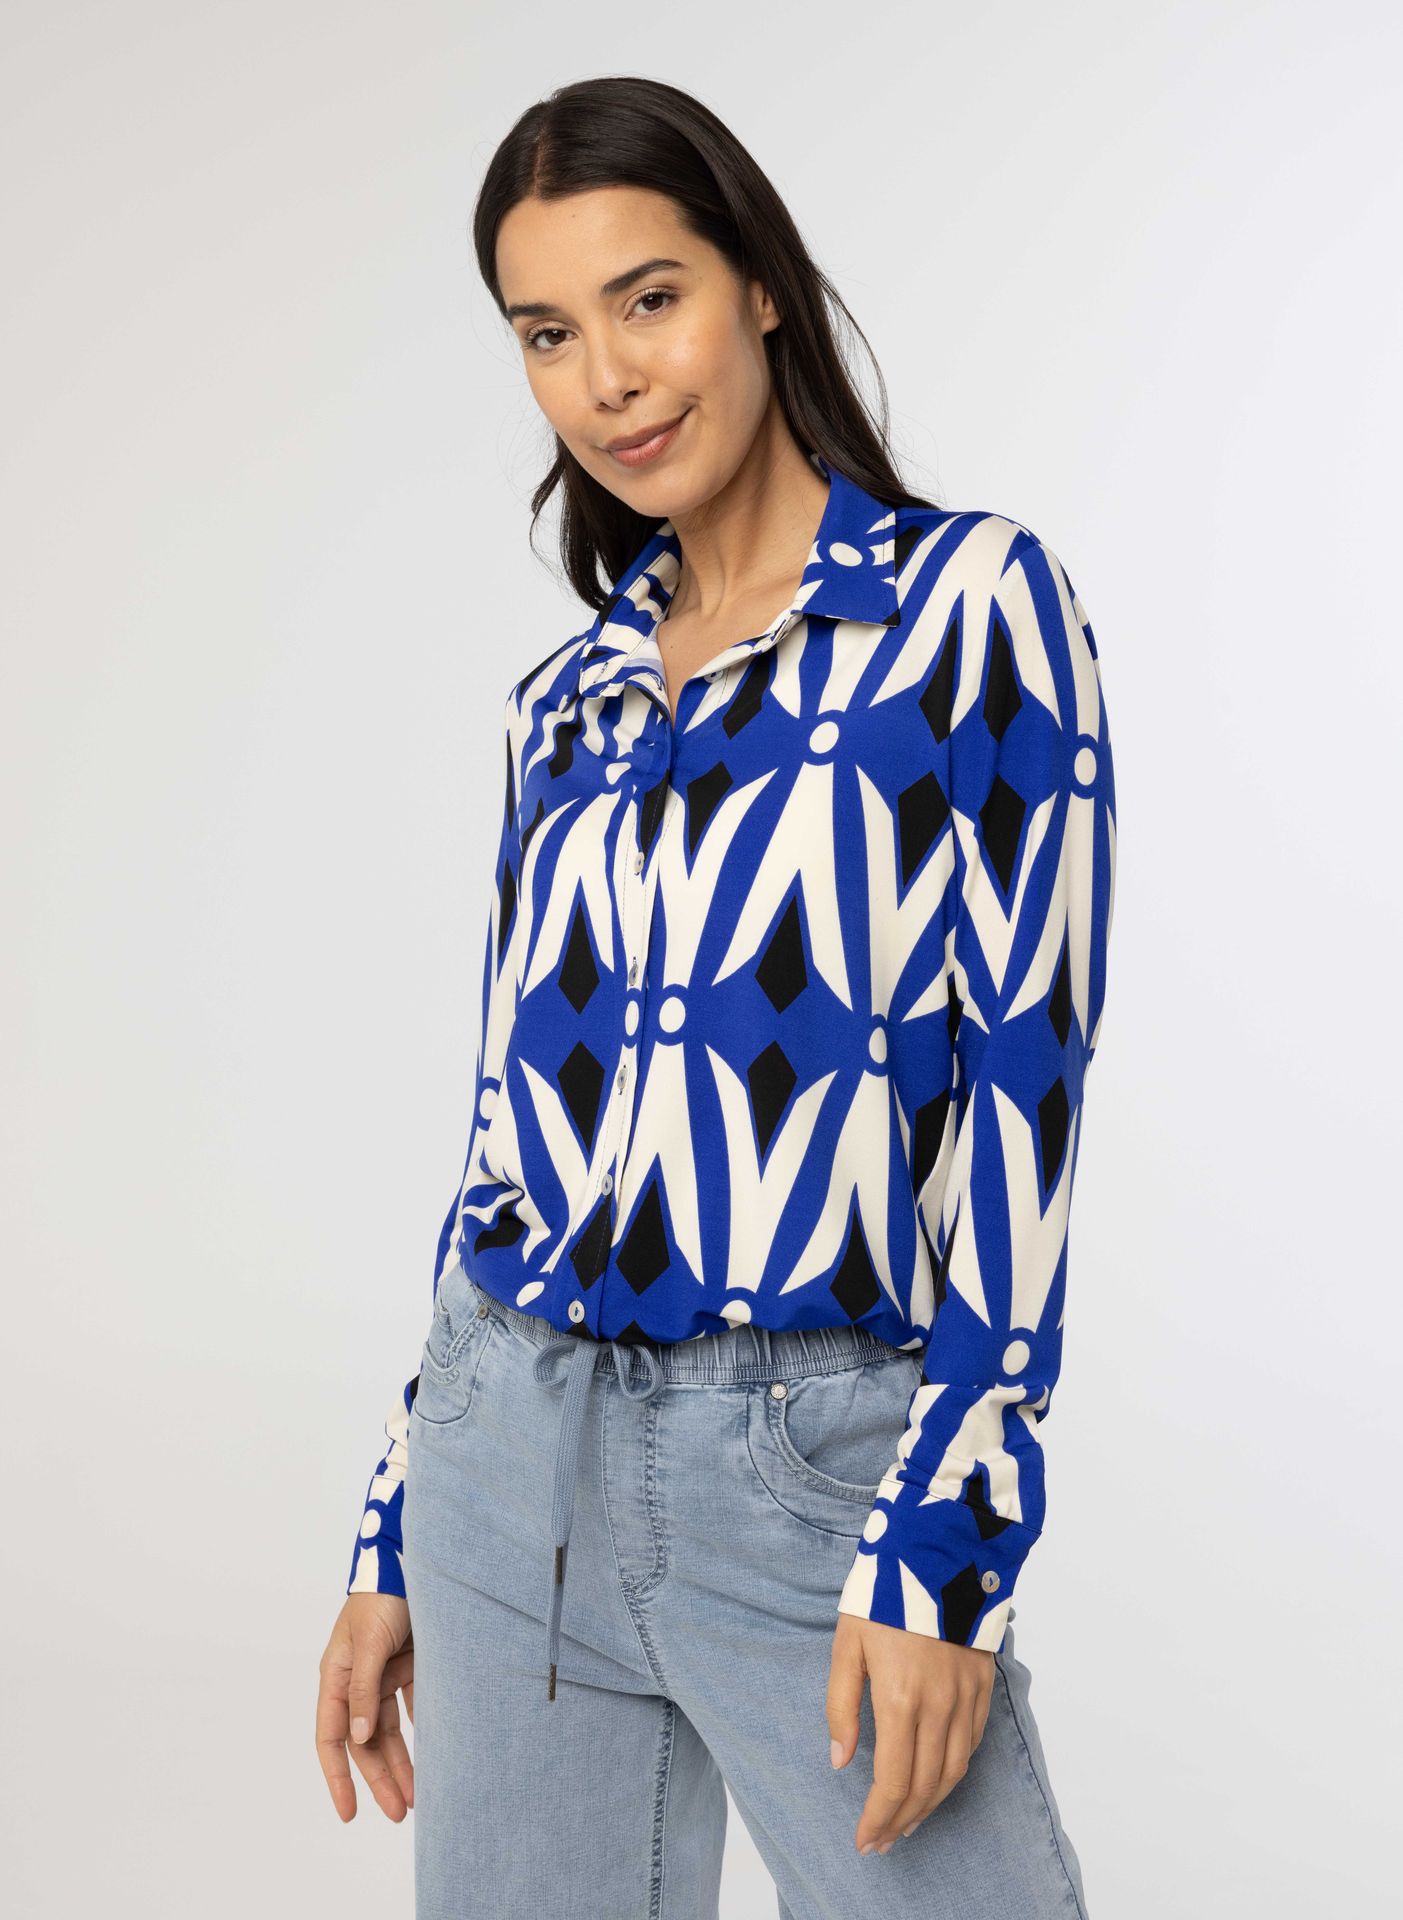  Kobaltblauwe blouse met print blue multicolor 213898-420-36